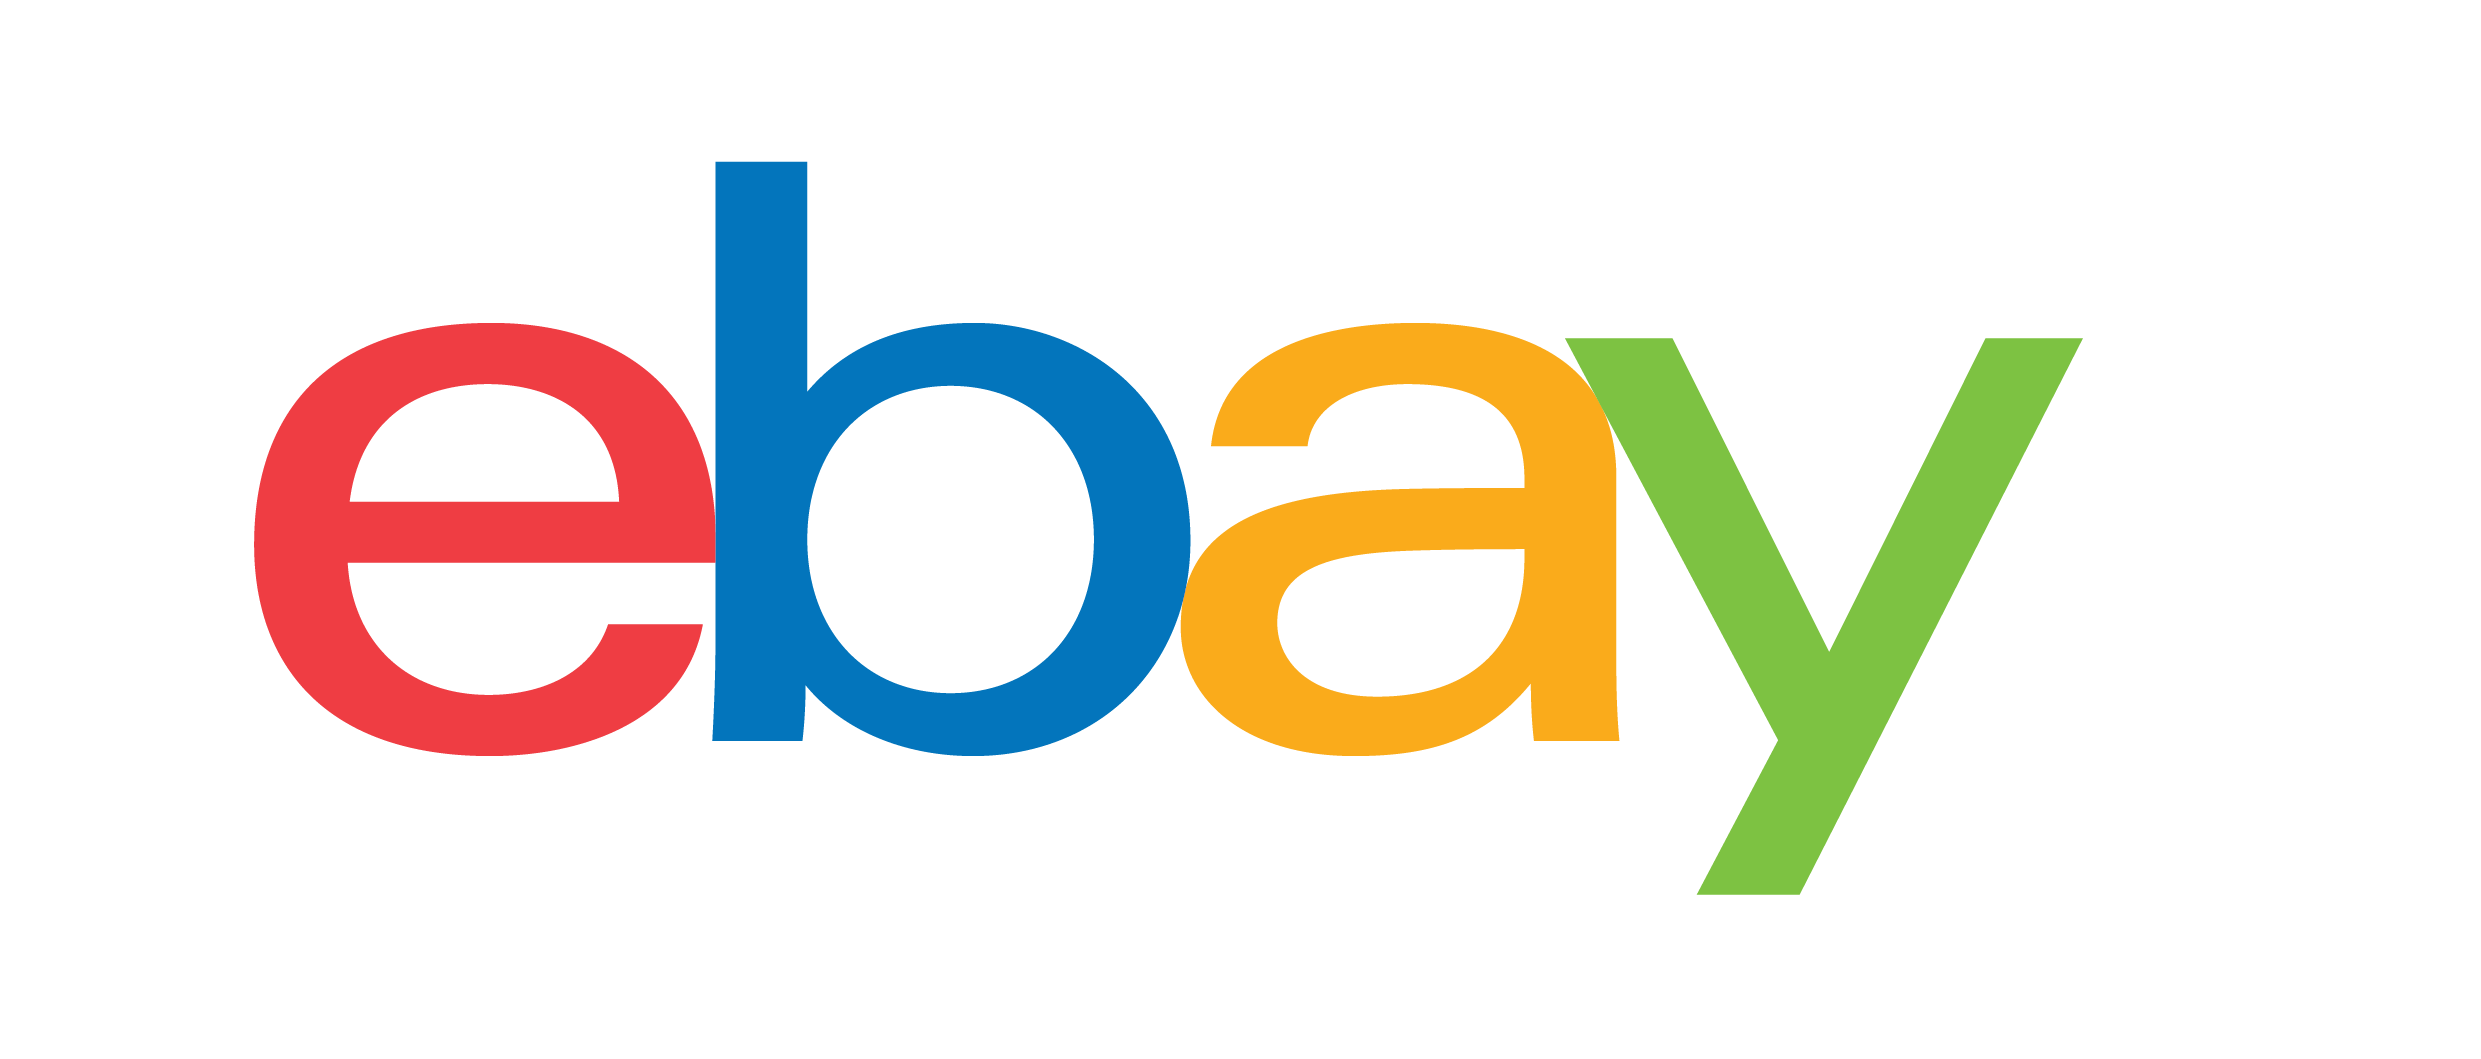 Logotipo de eBay.